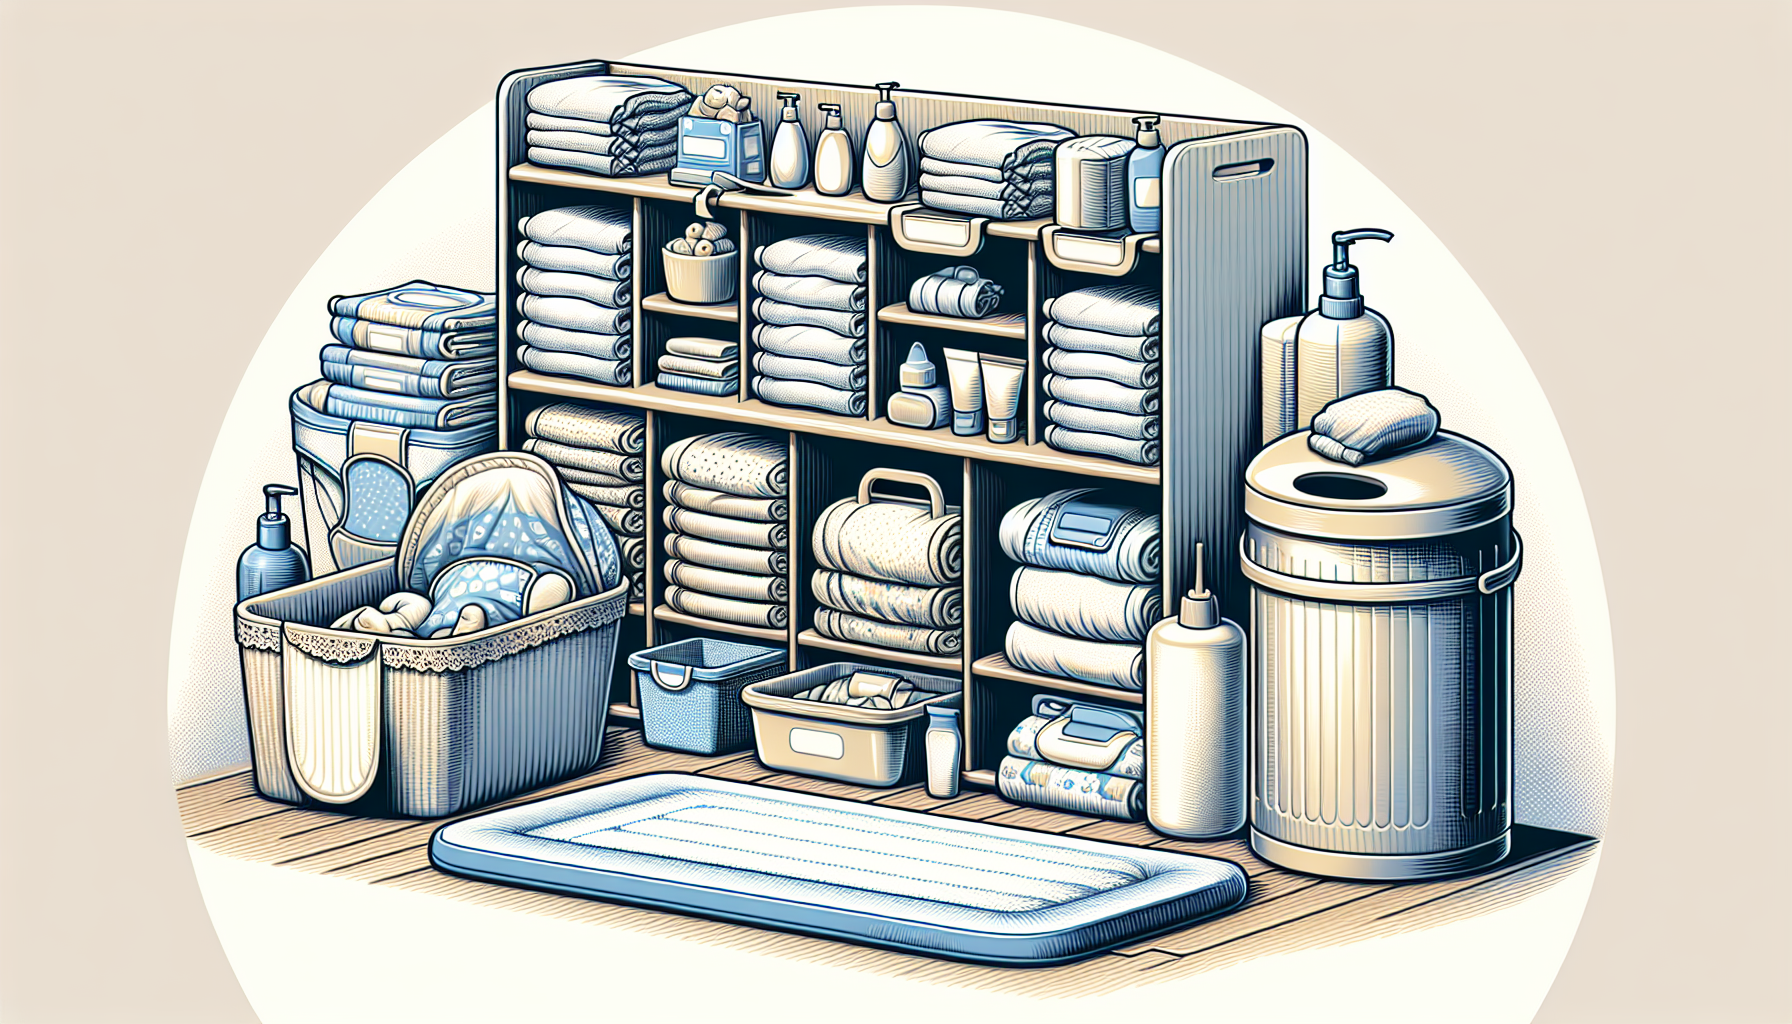 Illustration of diapering essentials